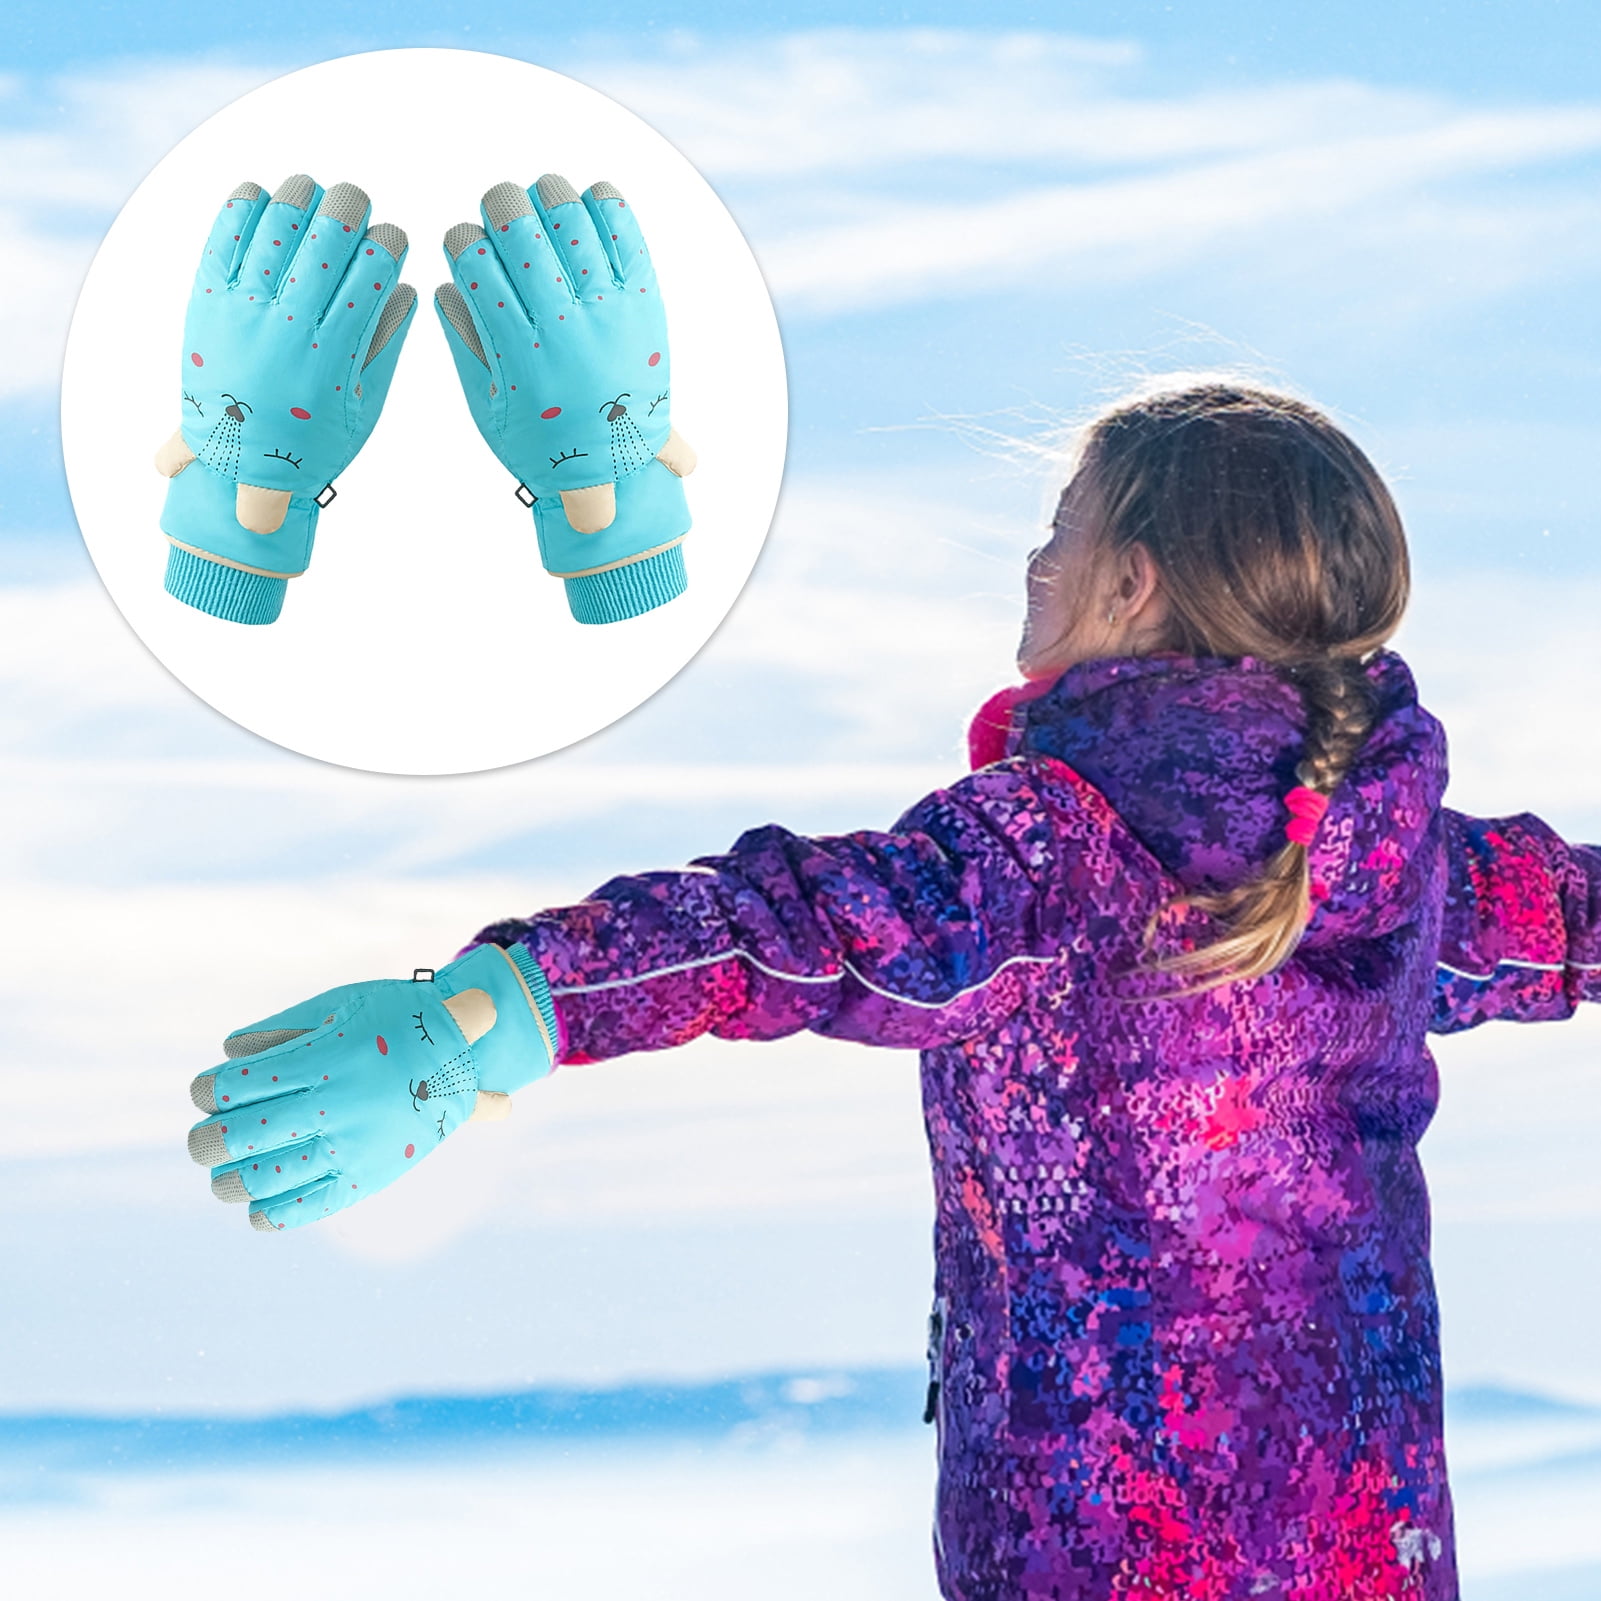 Details about   Children Plush Gloves Ski Gloves Autumn Winter Cute Baby Toddler Boys Girls Warm 